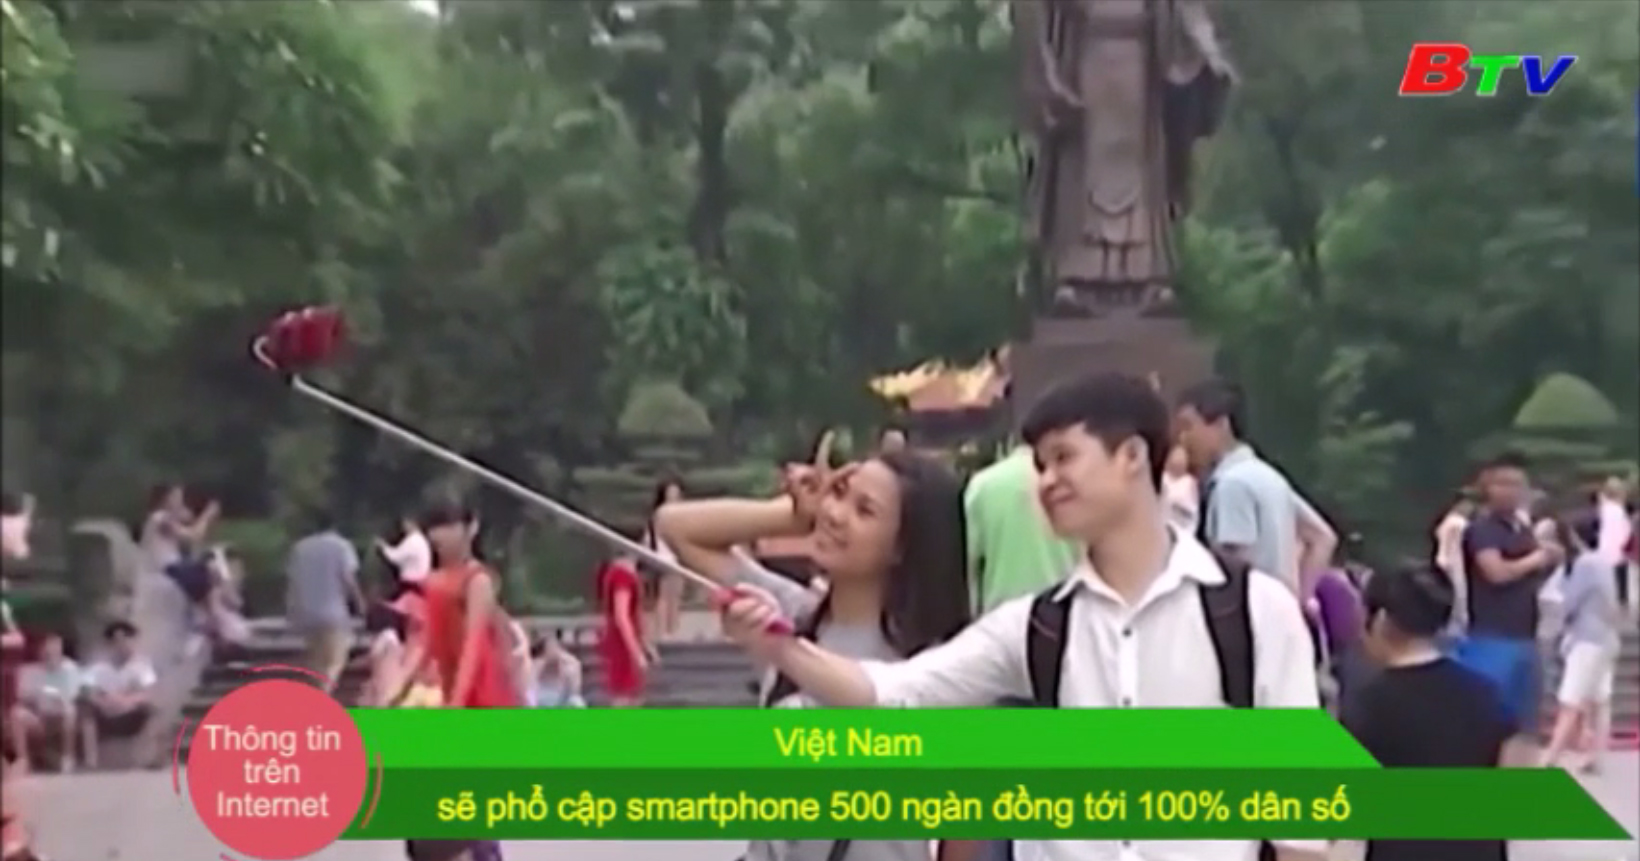 Việt Nam sẽ phổ cập smartphone 500 ngàn đồng tới 100% dân số